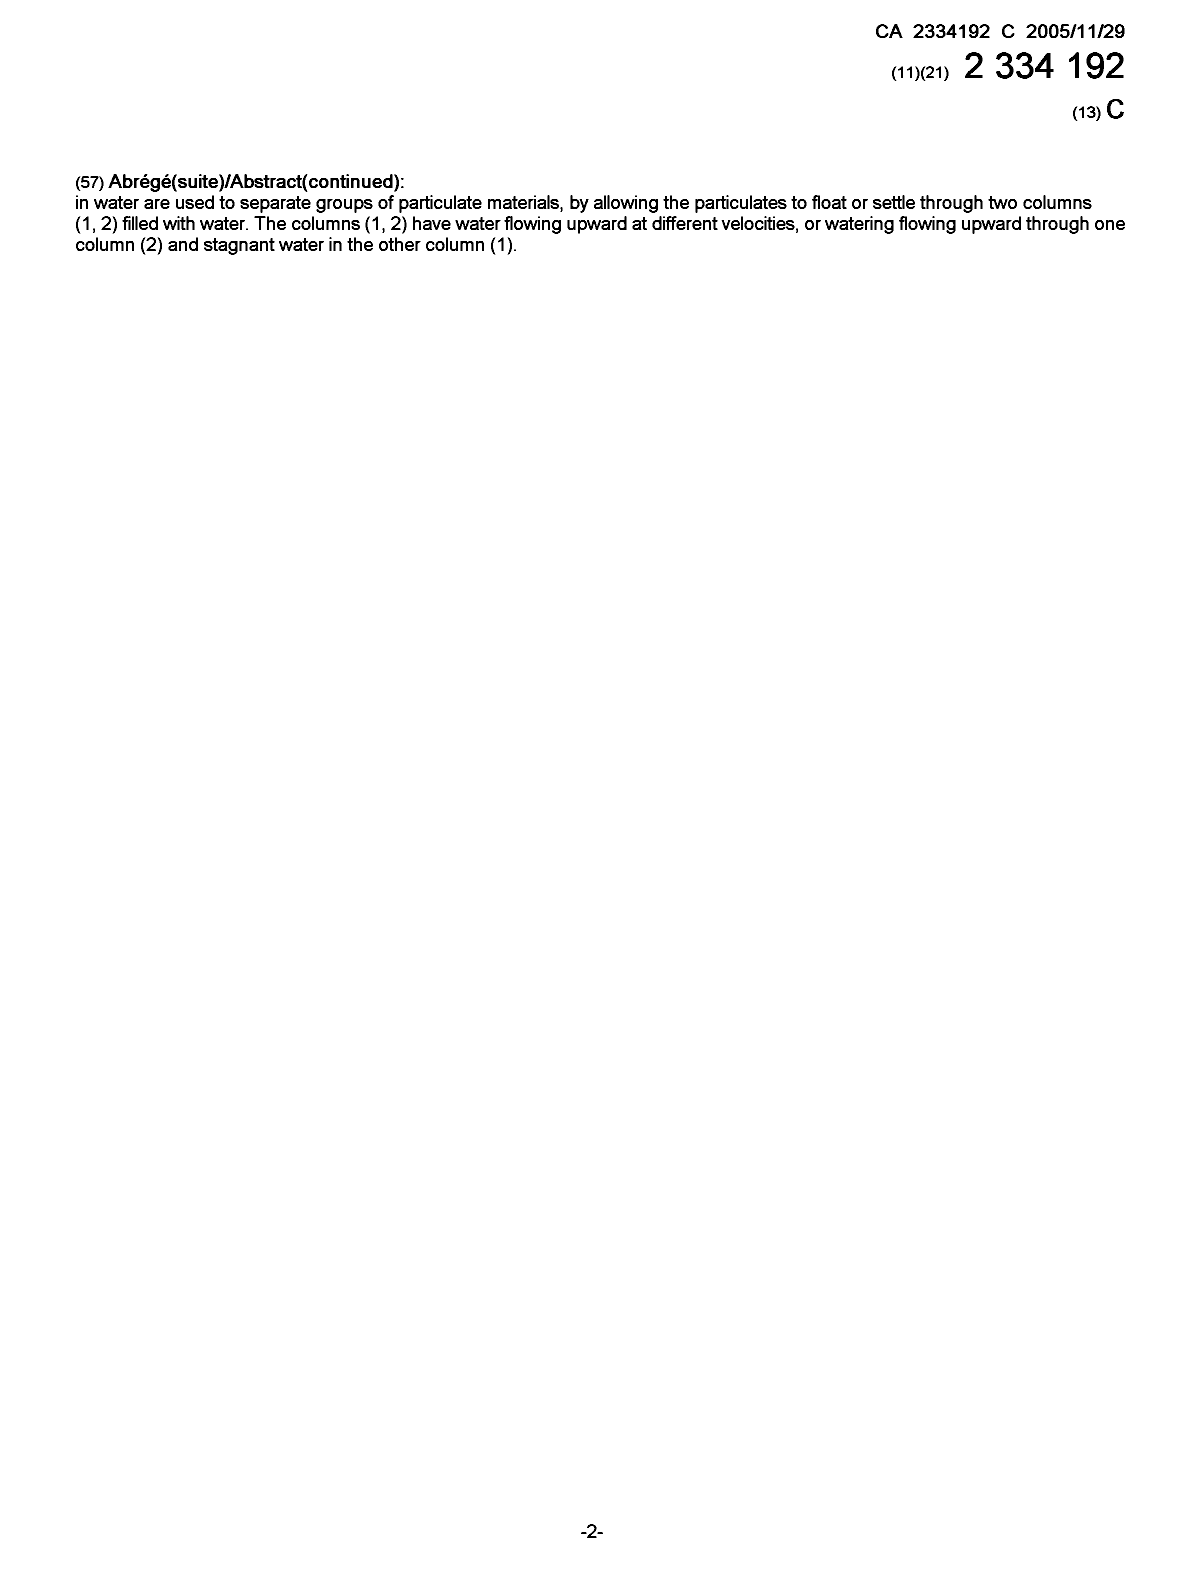 Document de brevet canadien 2334192. Page couverture 20051104. Image 2 de 2